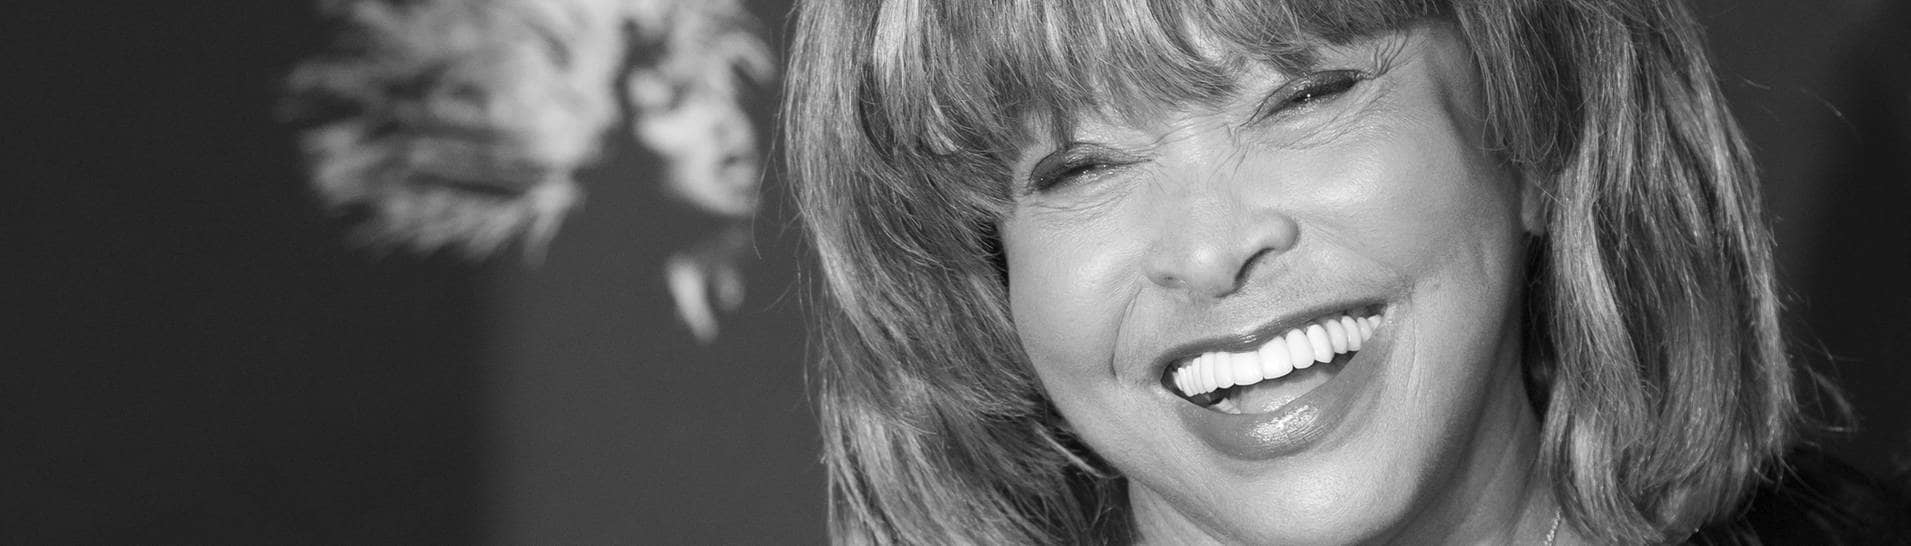 Rocksängerin Tina Turner bei einem Fototermin zum Musical «Tina - Das Tina Turner Musical». Die Rocksängerin Tina Turner ist tot. Die gebürtige Amerikanerin starb am Mittwoch im Alter von 83 Jahren in der Schweiz, wo sie seit vielen Jahren lebte, wie ein Sprecher am Abend bekannt gab. (Foto: dpa Bildfunk, picture alliance/dpa | Christian Charisius)